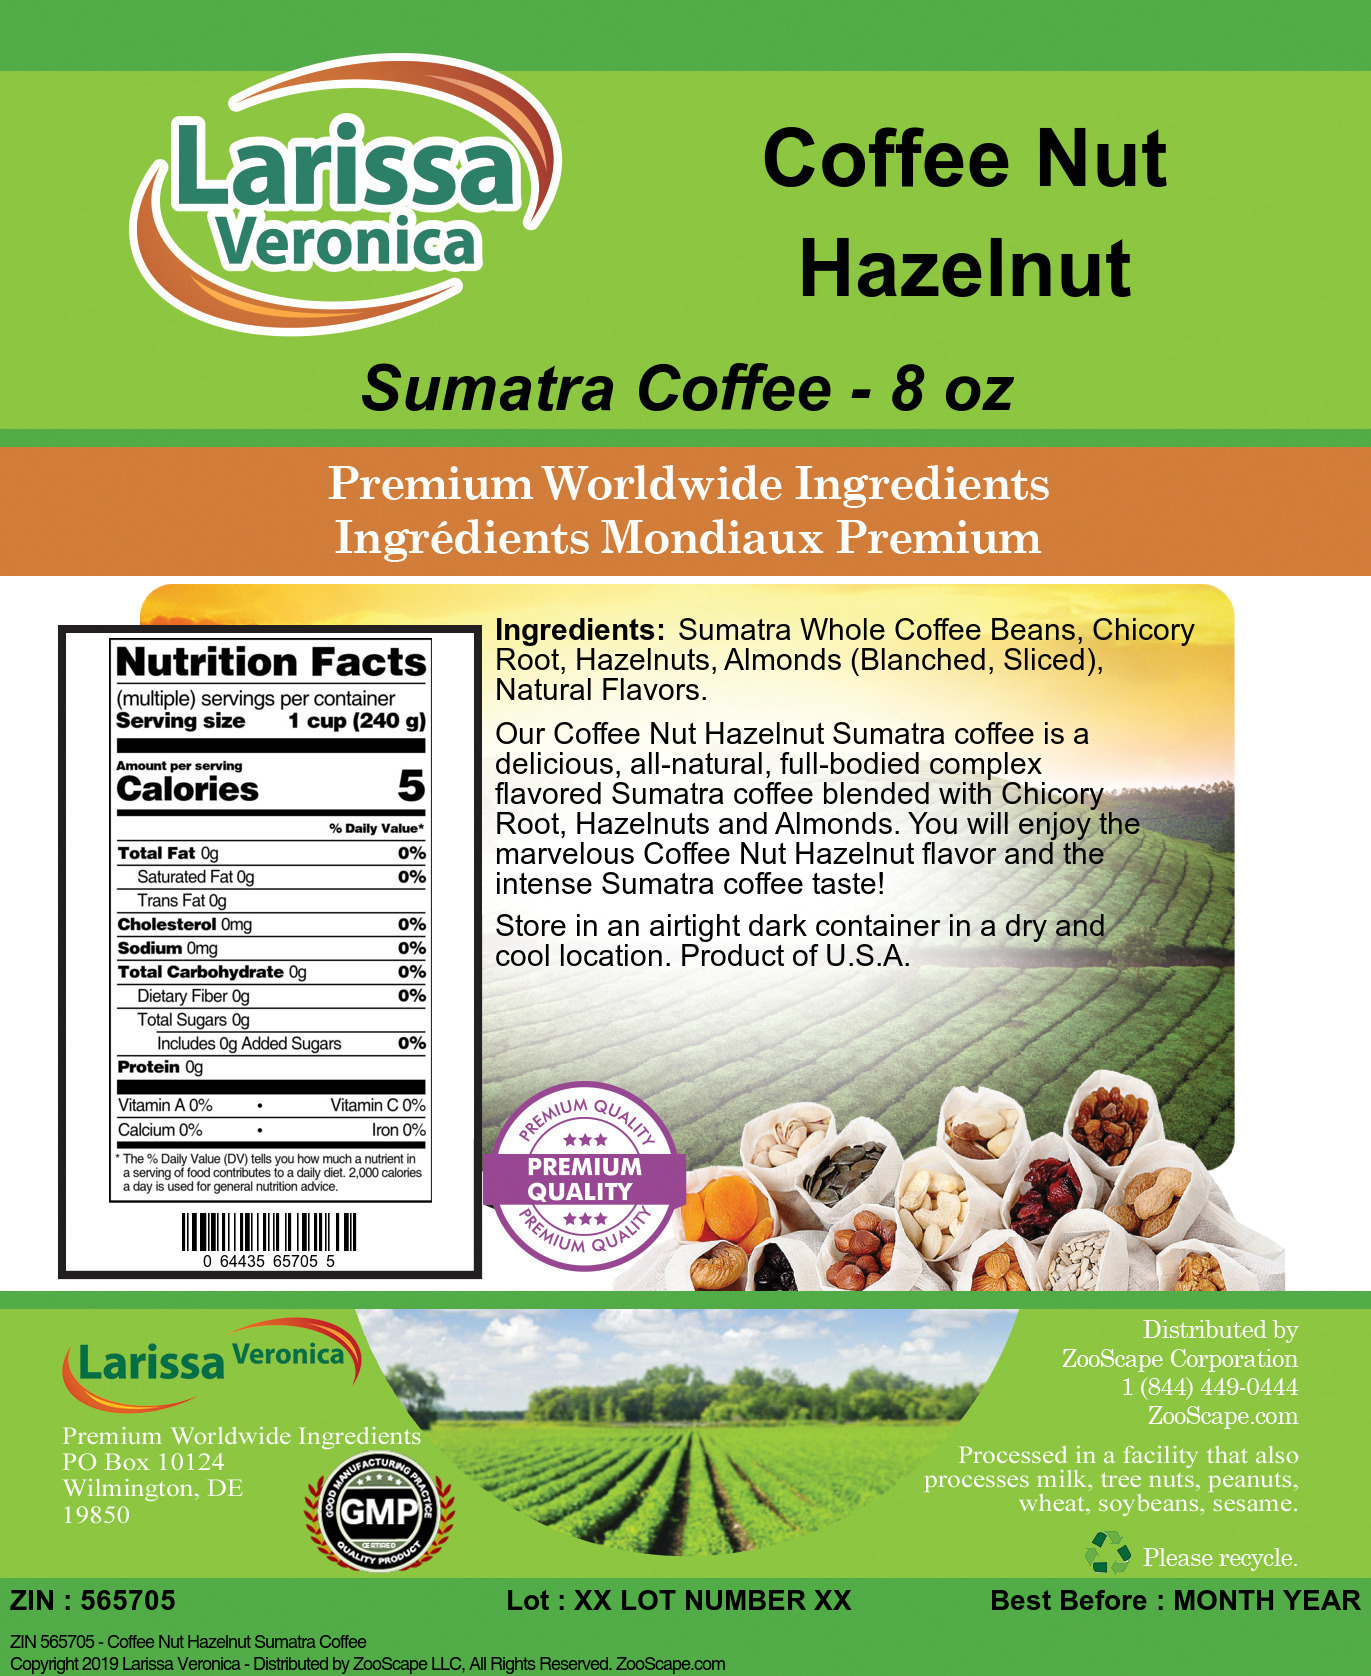 Coffee Nut Hazelnut Sumatra Coffee - Label